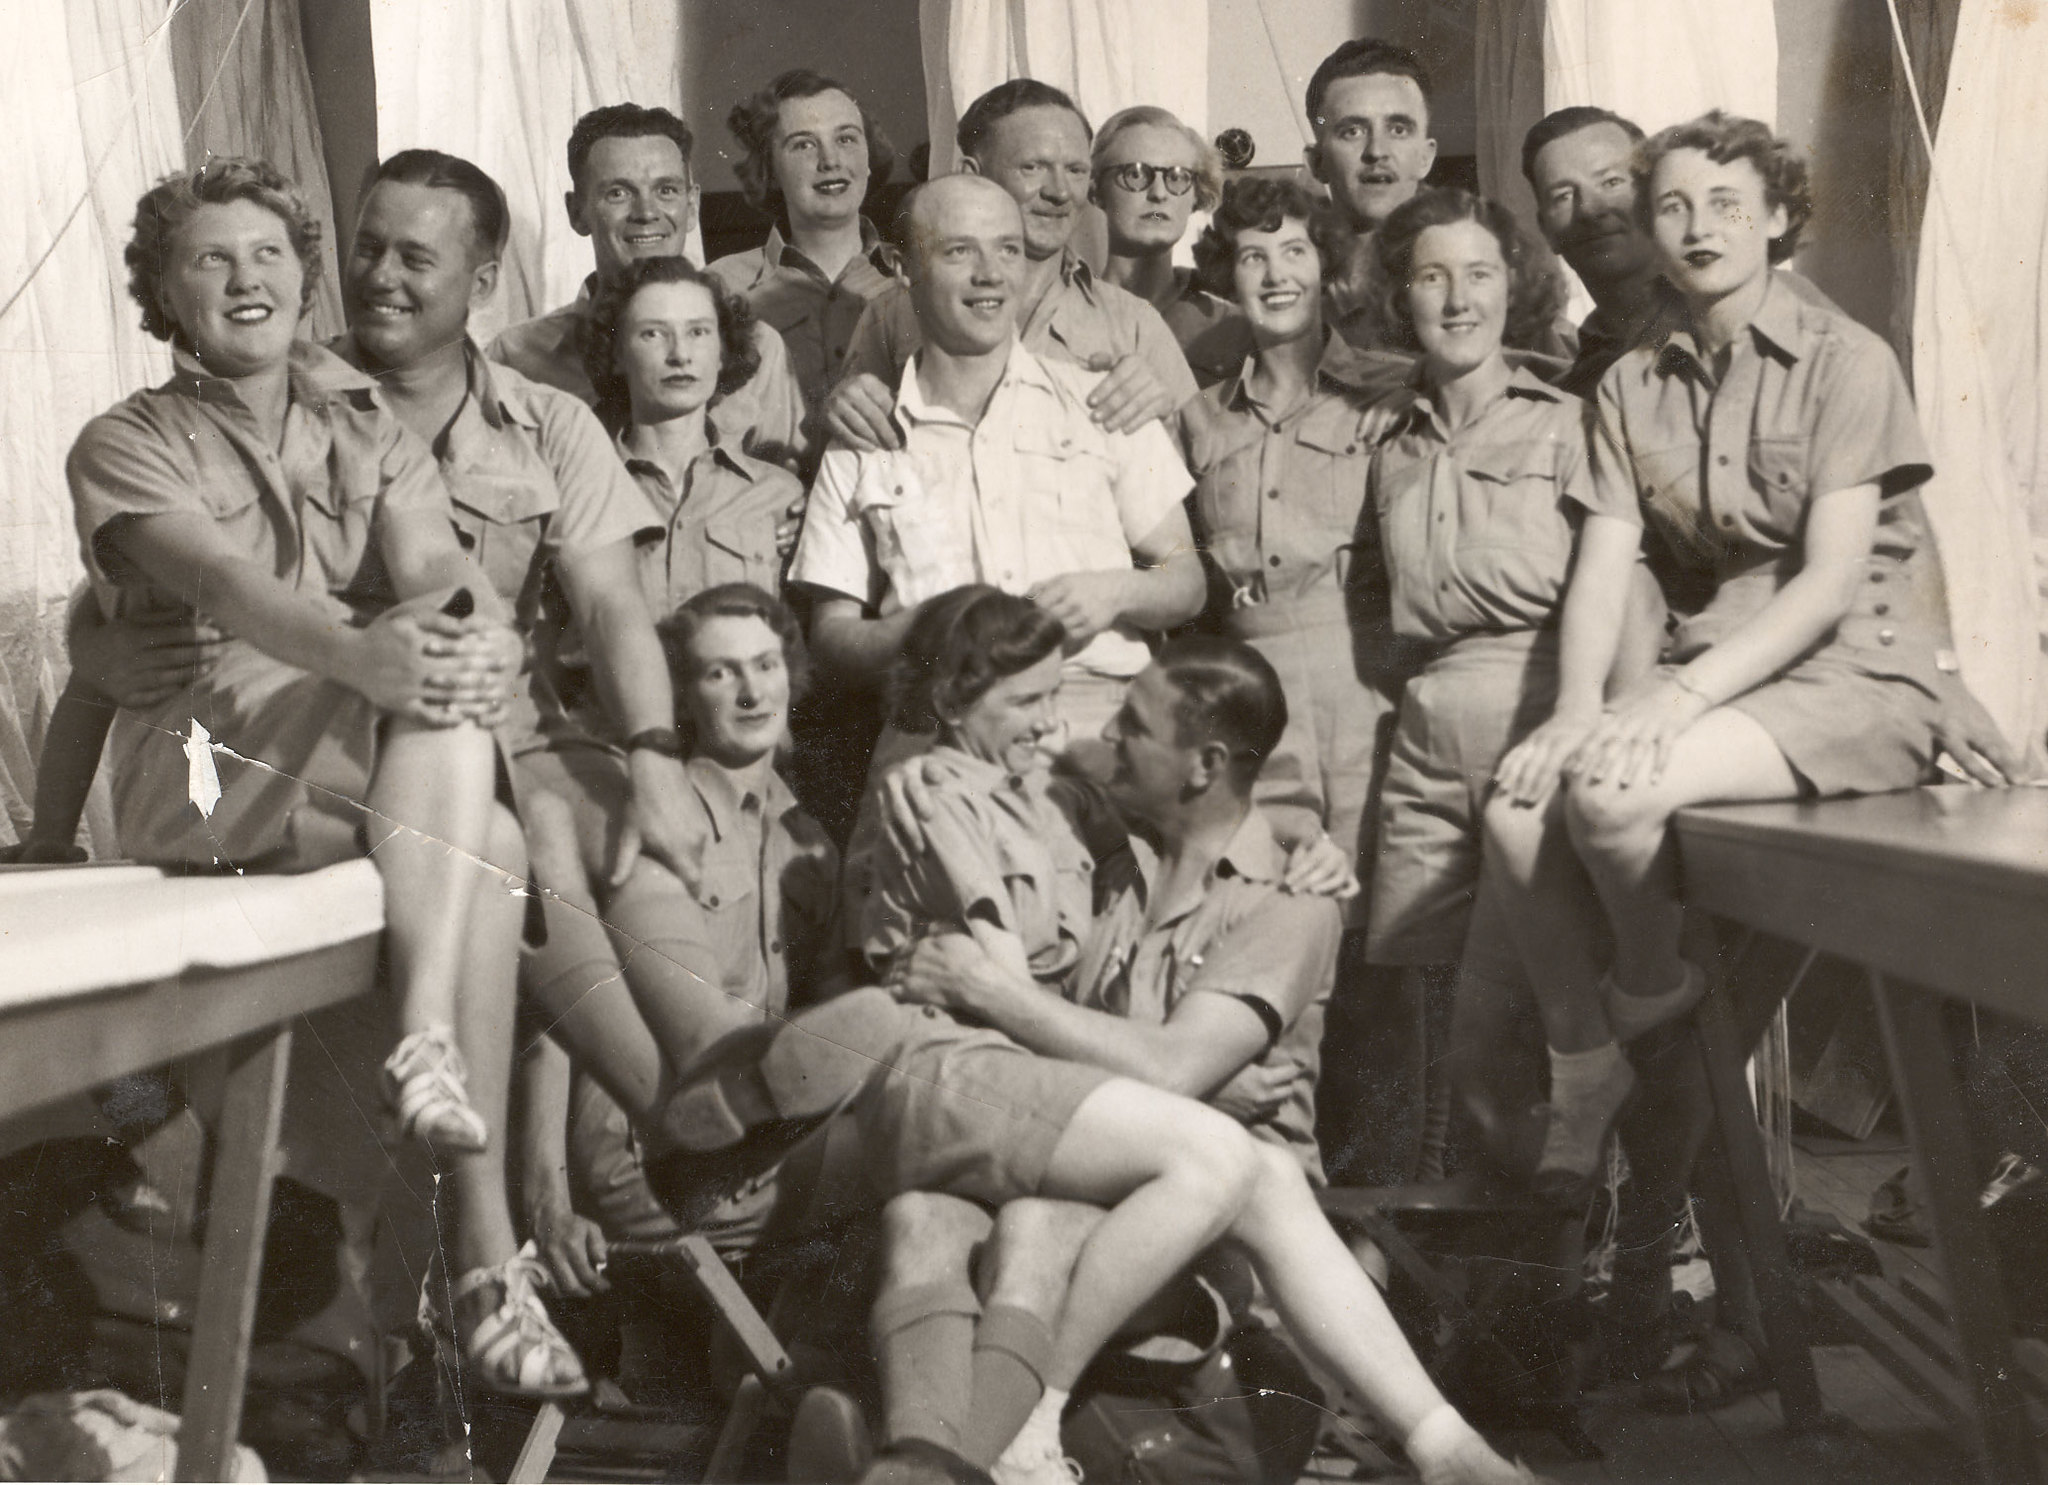 Australian service members in the 1940s